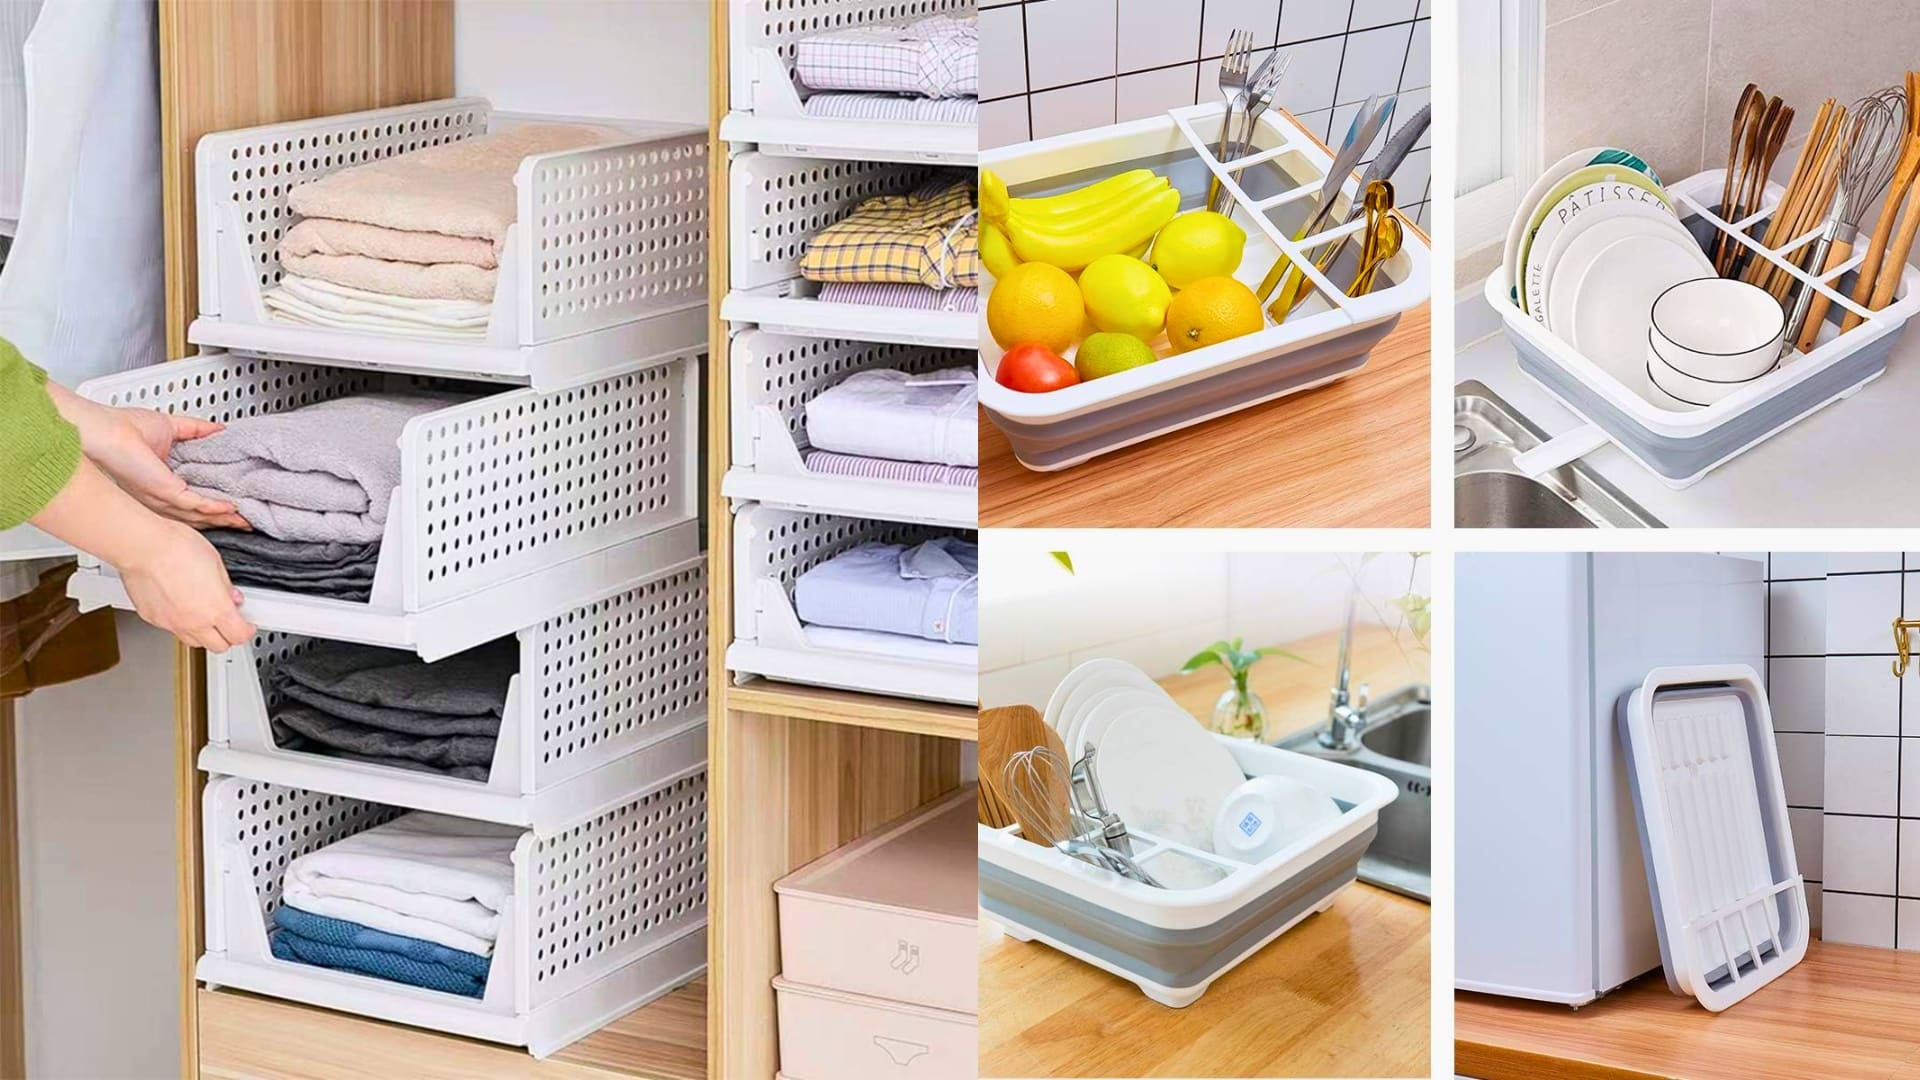 10 Storage Ideas for RV Closets: Organize Your RV Closet